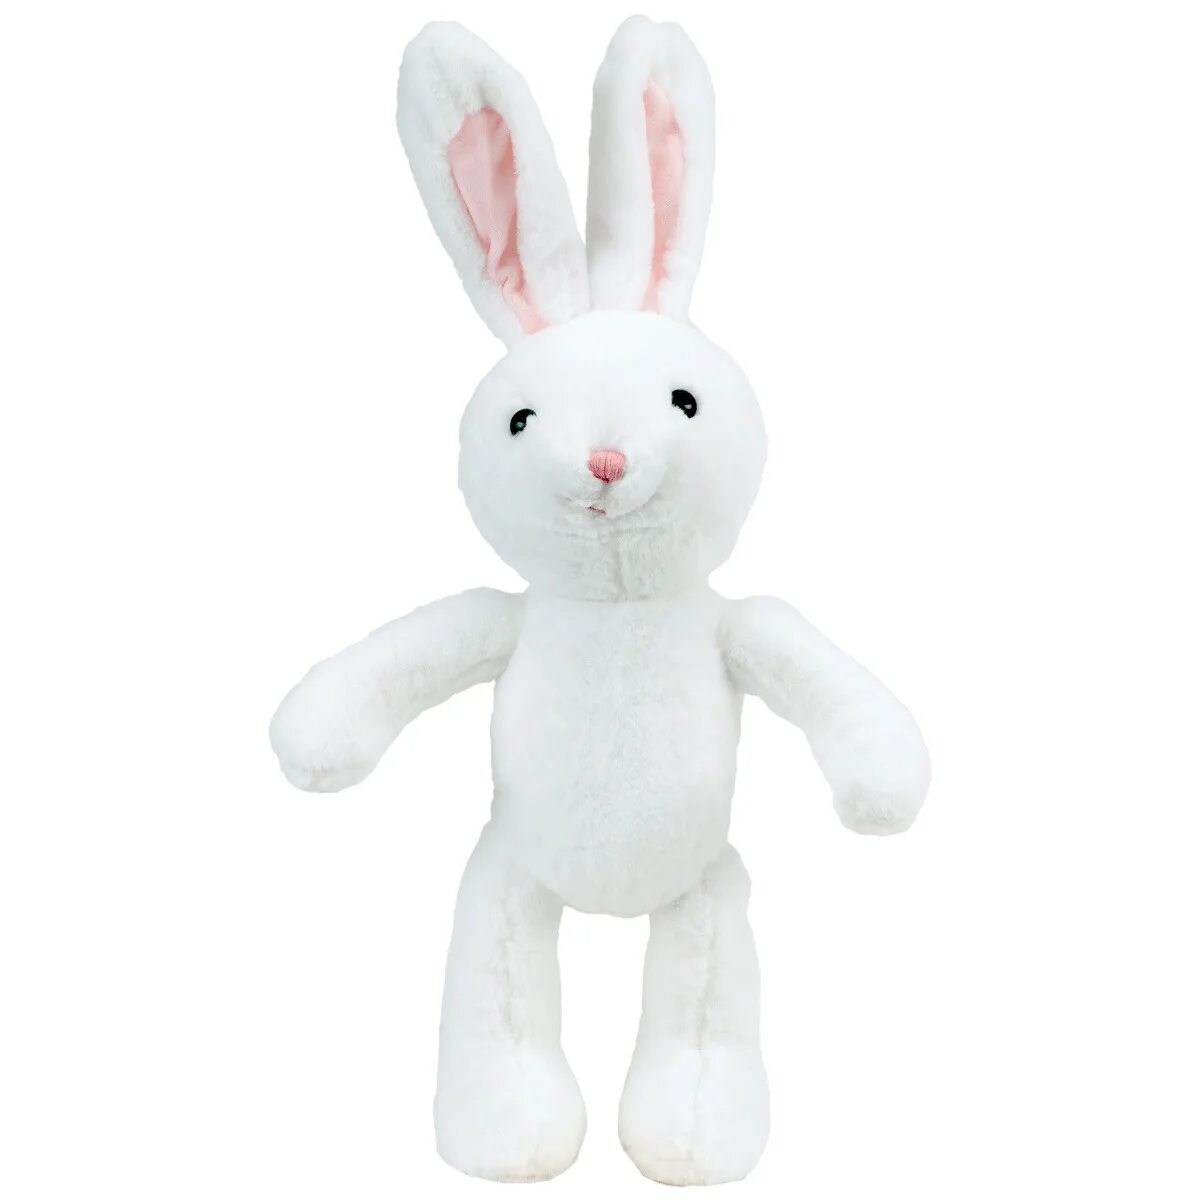 Игрушка белый заяц. Mr.mish игрушки. Мягкая игрушка Bunny Carrollton. Белый заяц игрушка. Мягкая игрушка заяц белый.